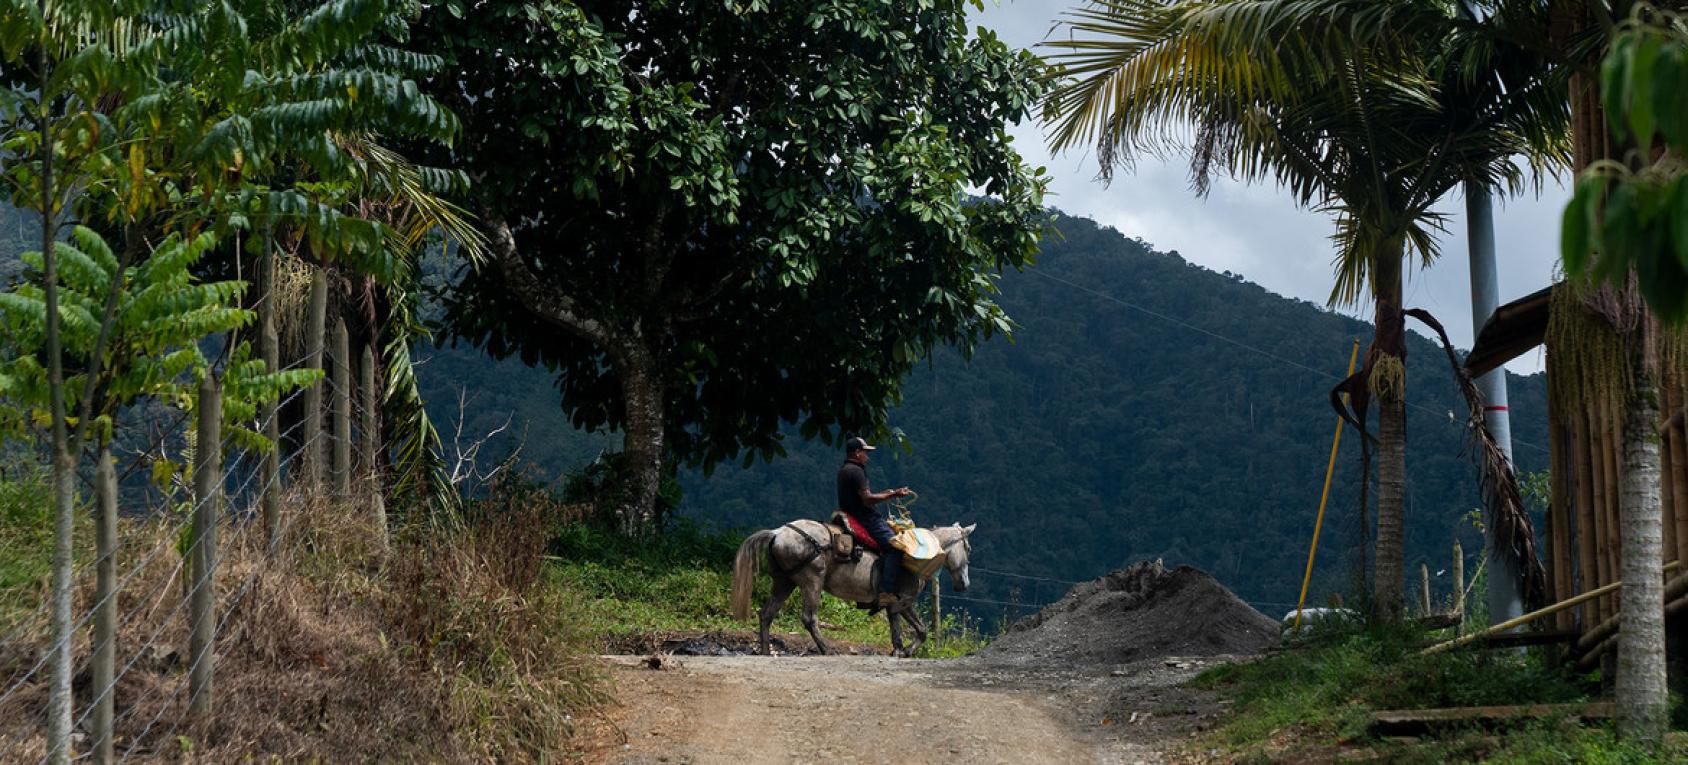 رجل في نهاية طريق ترابي يجلس على حصان بالقرب من أرض خضراء مورقة.